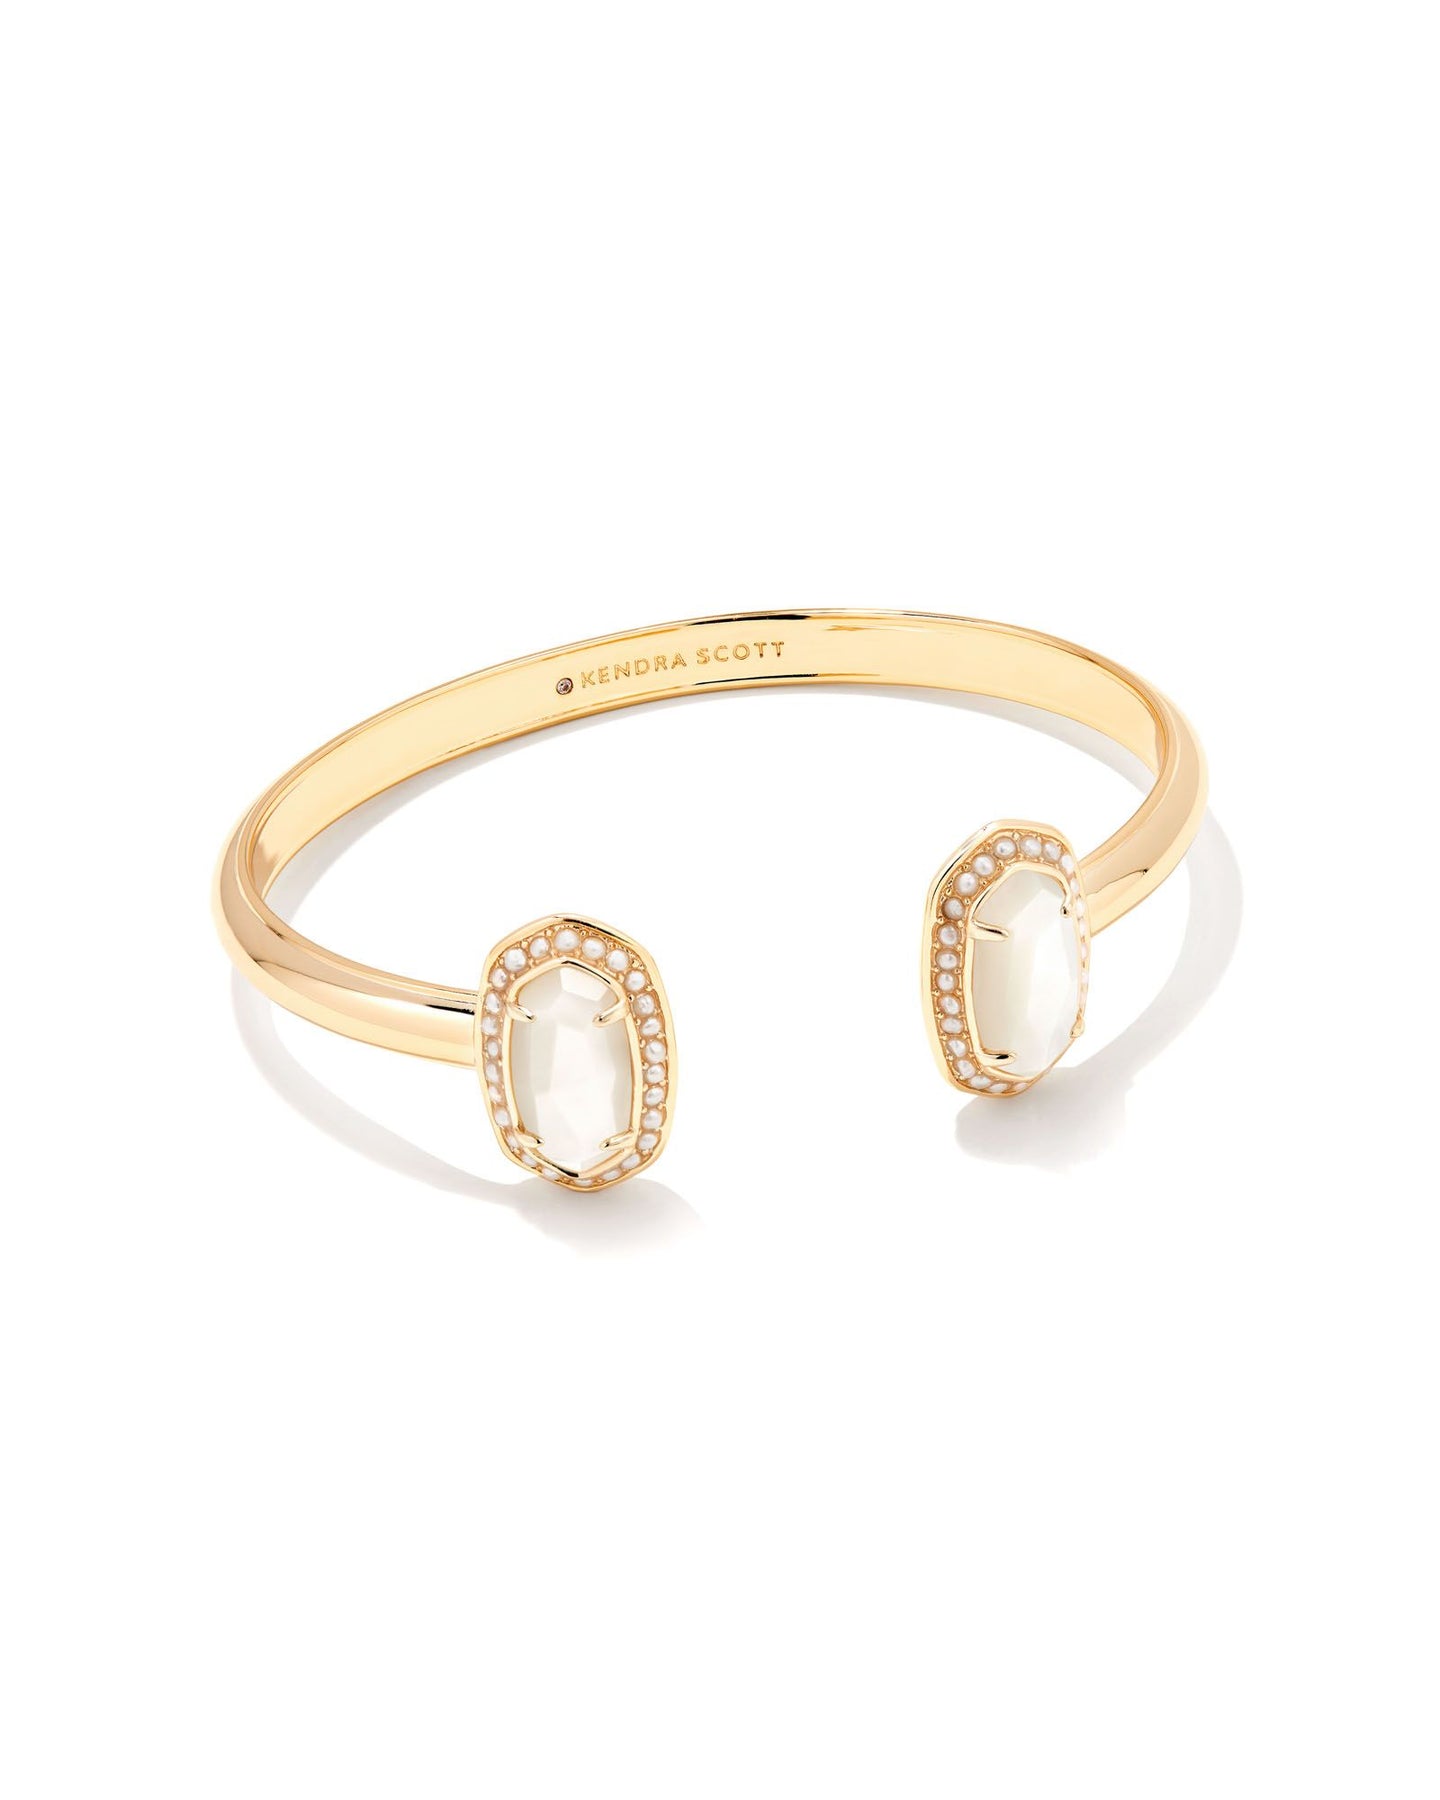 Hand Bracelet for Women | Birthstone Bracelets - Shop Glow